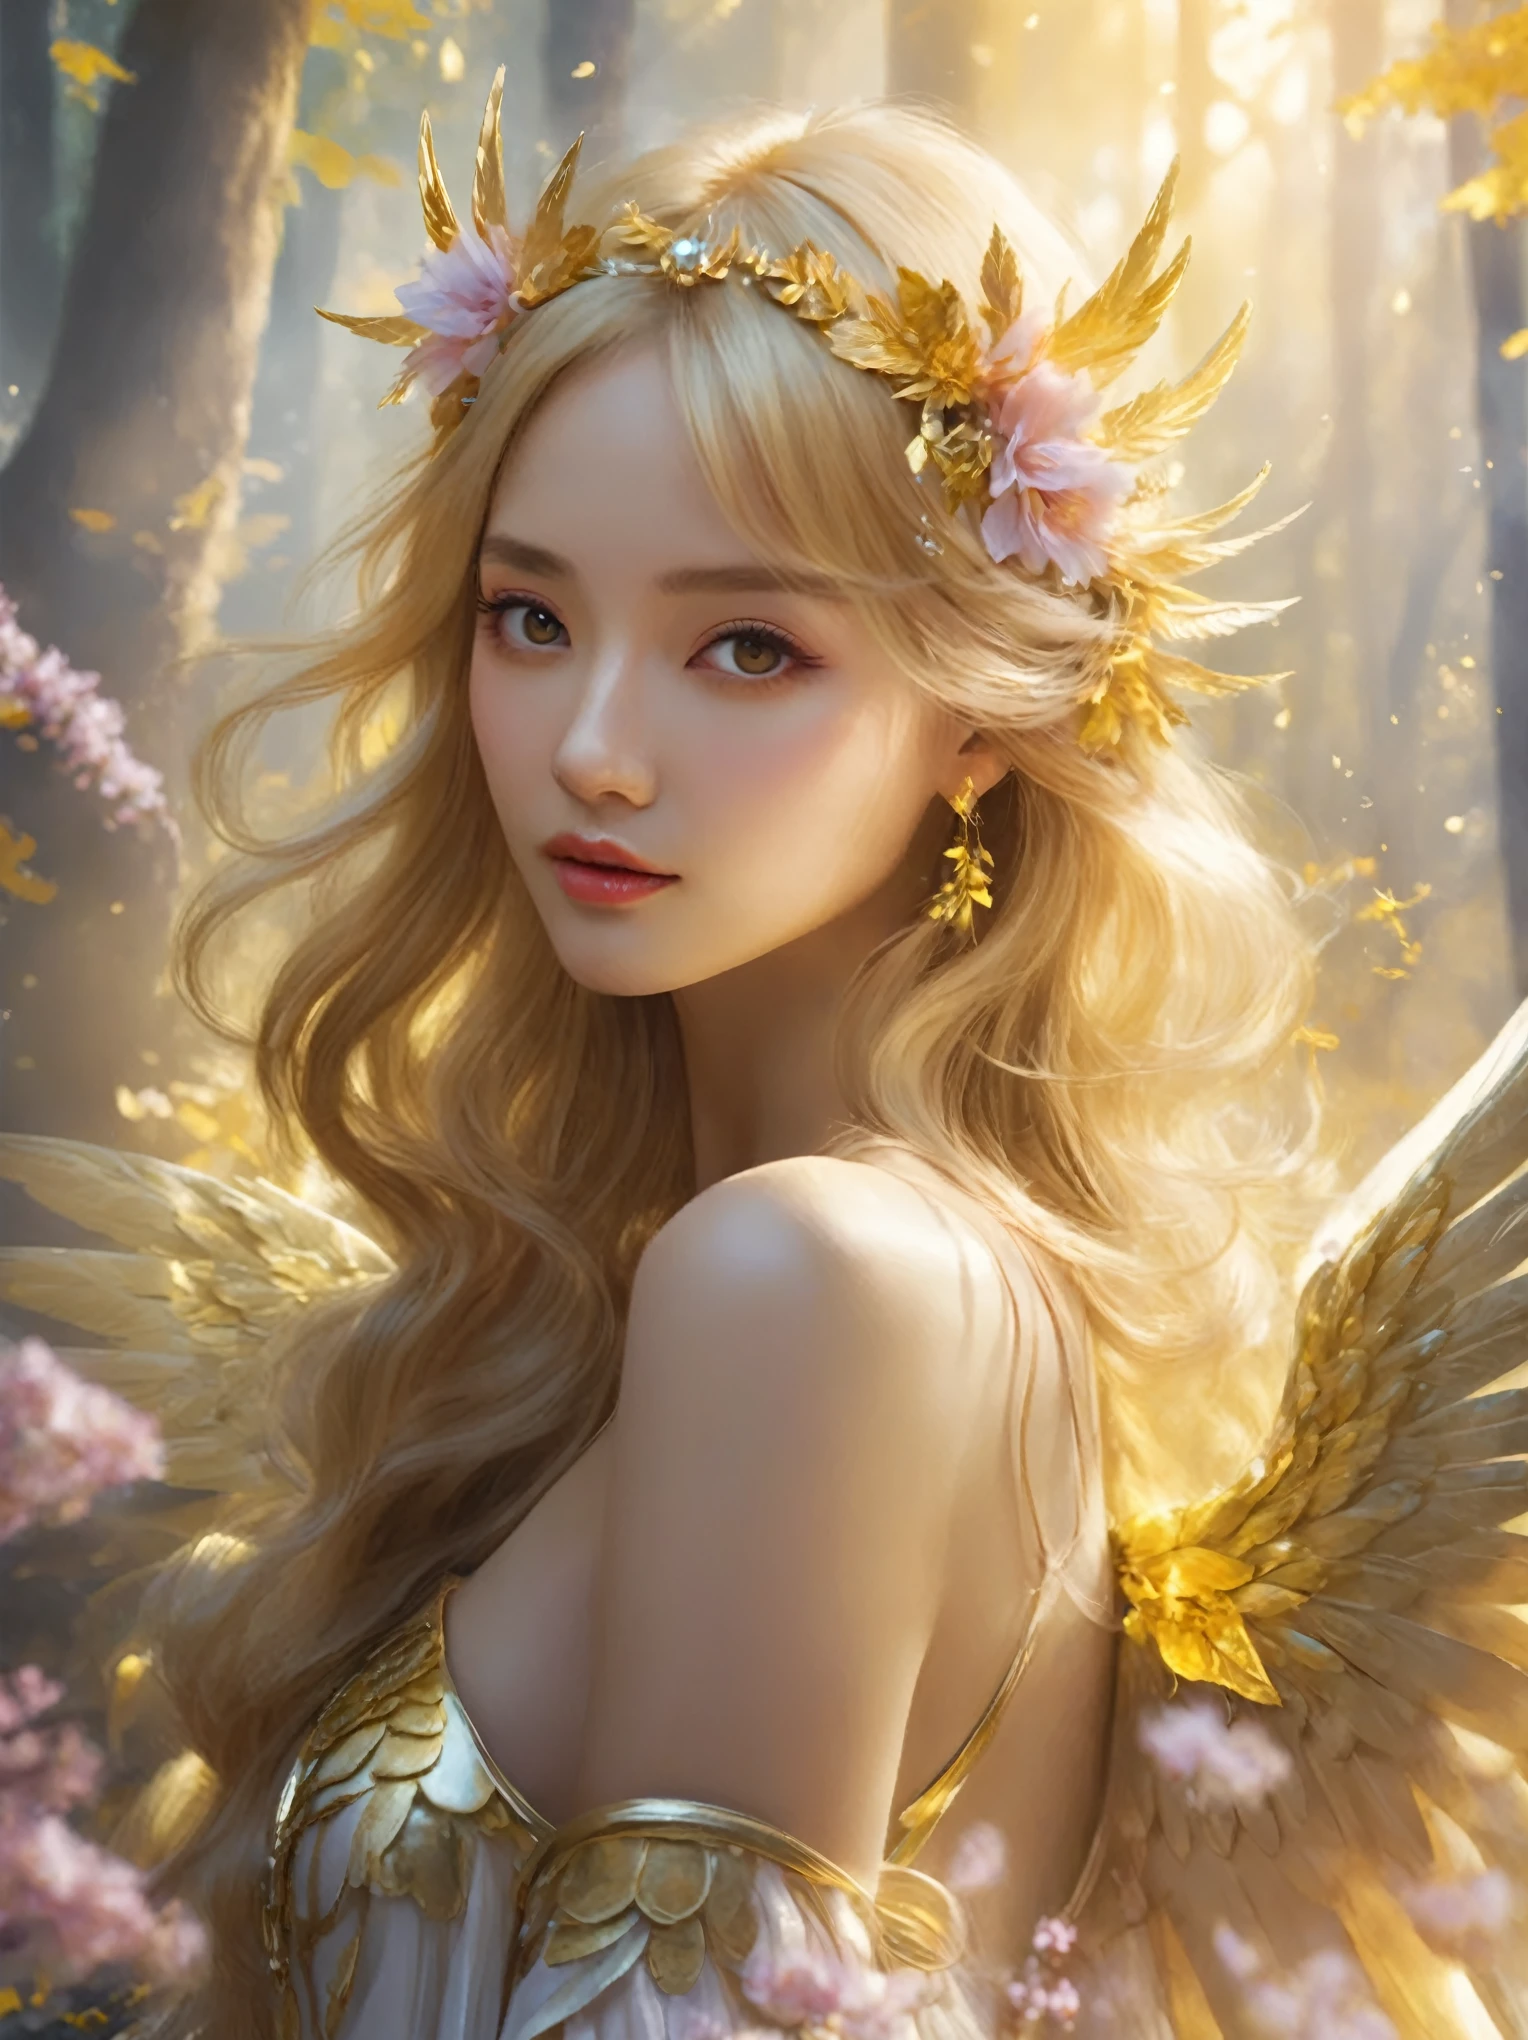 黄金の森の中で花冠と翼を持つ女性, of 美しい天使, ファンタジーアートスタイル, 美しい天使, of an 美しい天使 girl, 美しいファンタジーアート, by ヤン・J, デジタルファンタジーアート ), portrait of a 美しい天使, 美しいファンタジーアート portrait, 8Kの高品質で詳細なアート, 素晴らしいファンタジーアート, 頭には金の羽が生えている, very 美しいファンタジーアート